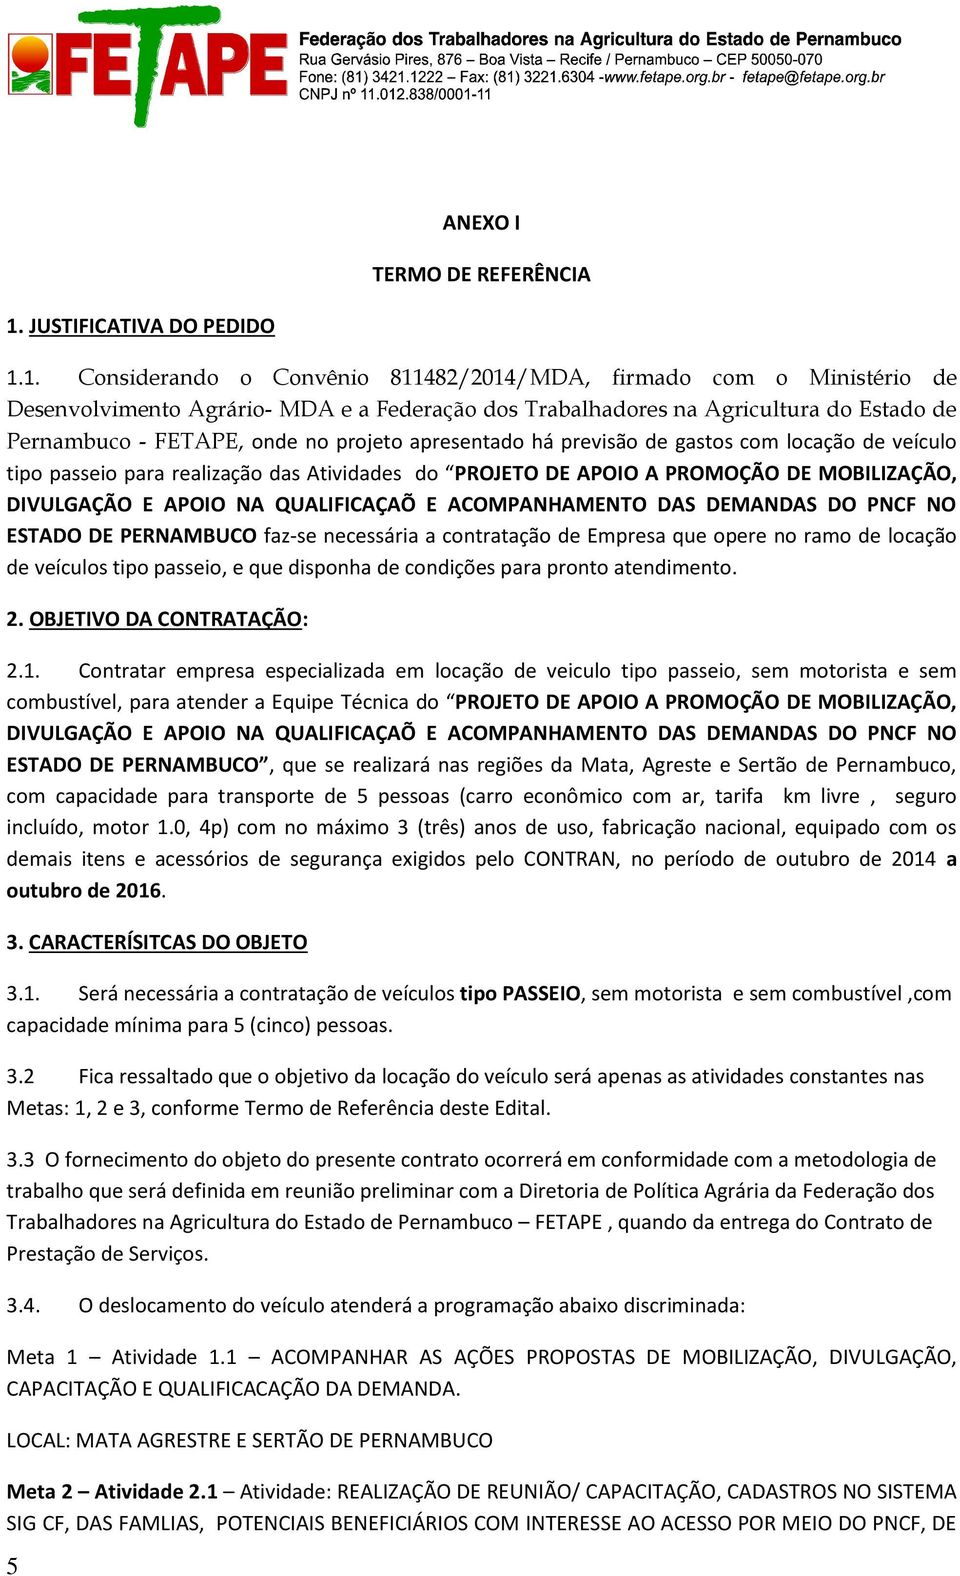 1. Considerando o Convênio 811482/2014/MDA, firmado com o Ministério de Desenvolvimento Agrário- MDA e a Federação dos Trabalhadores na Agricultura do Estado de Pernambuco - FETAPE, onde no projeto